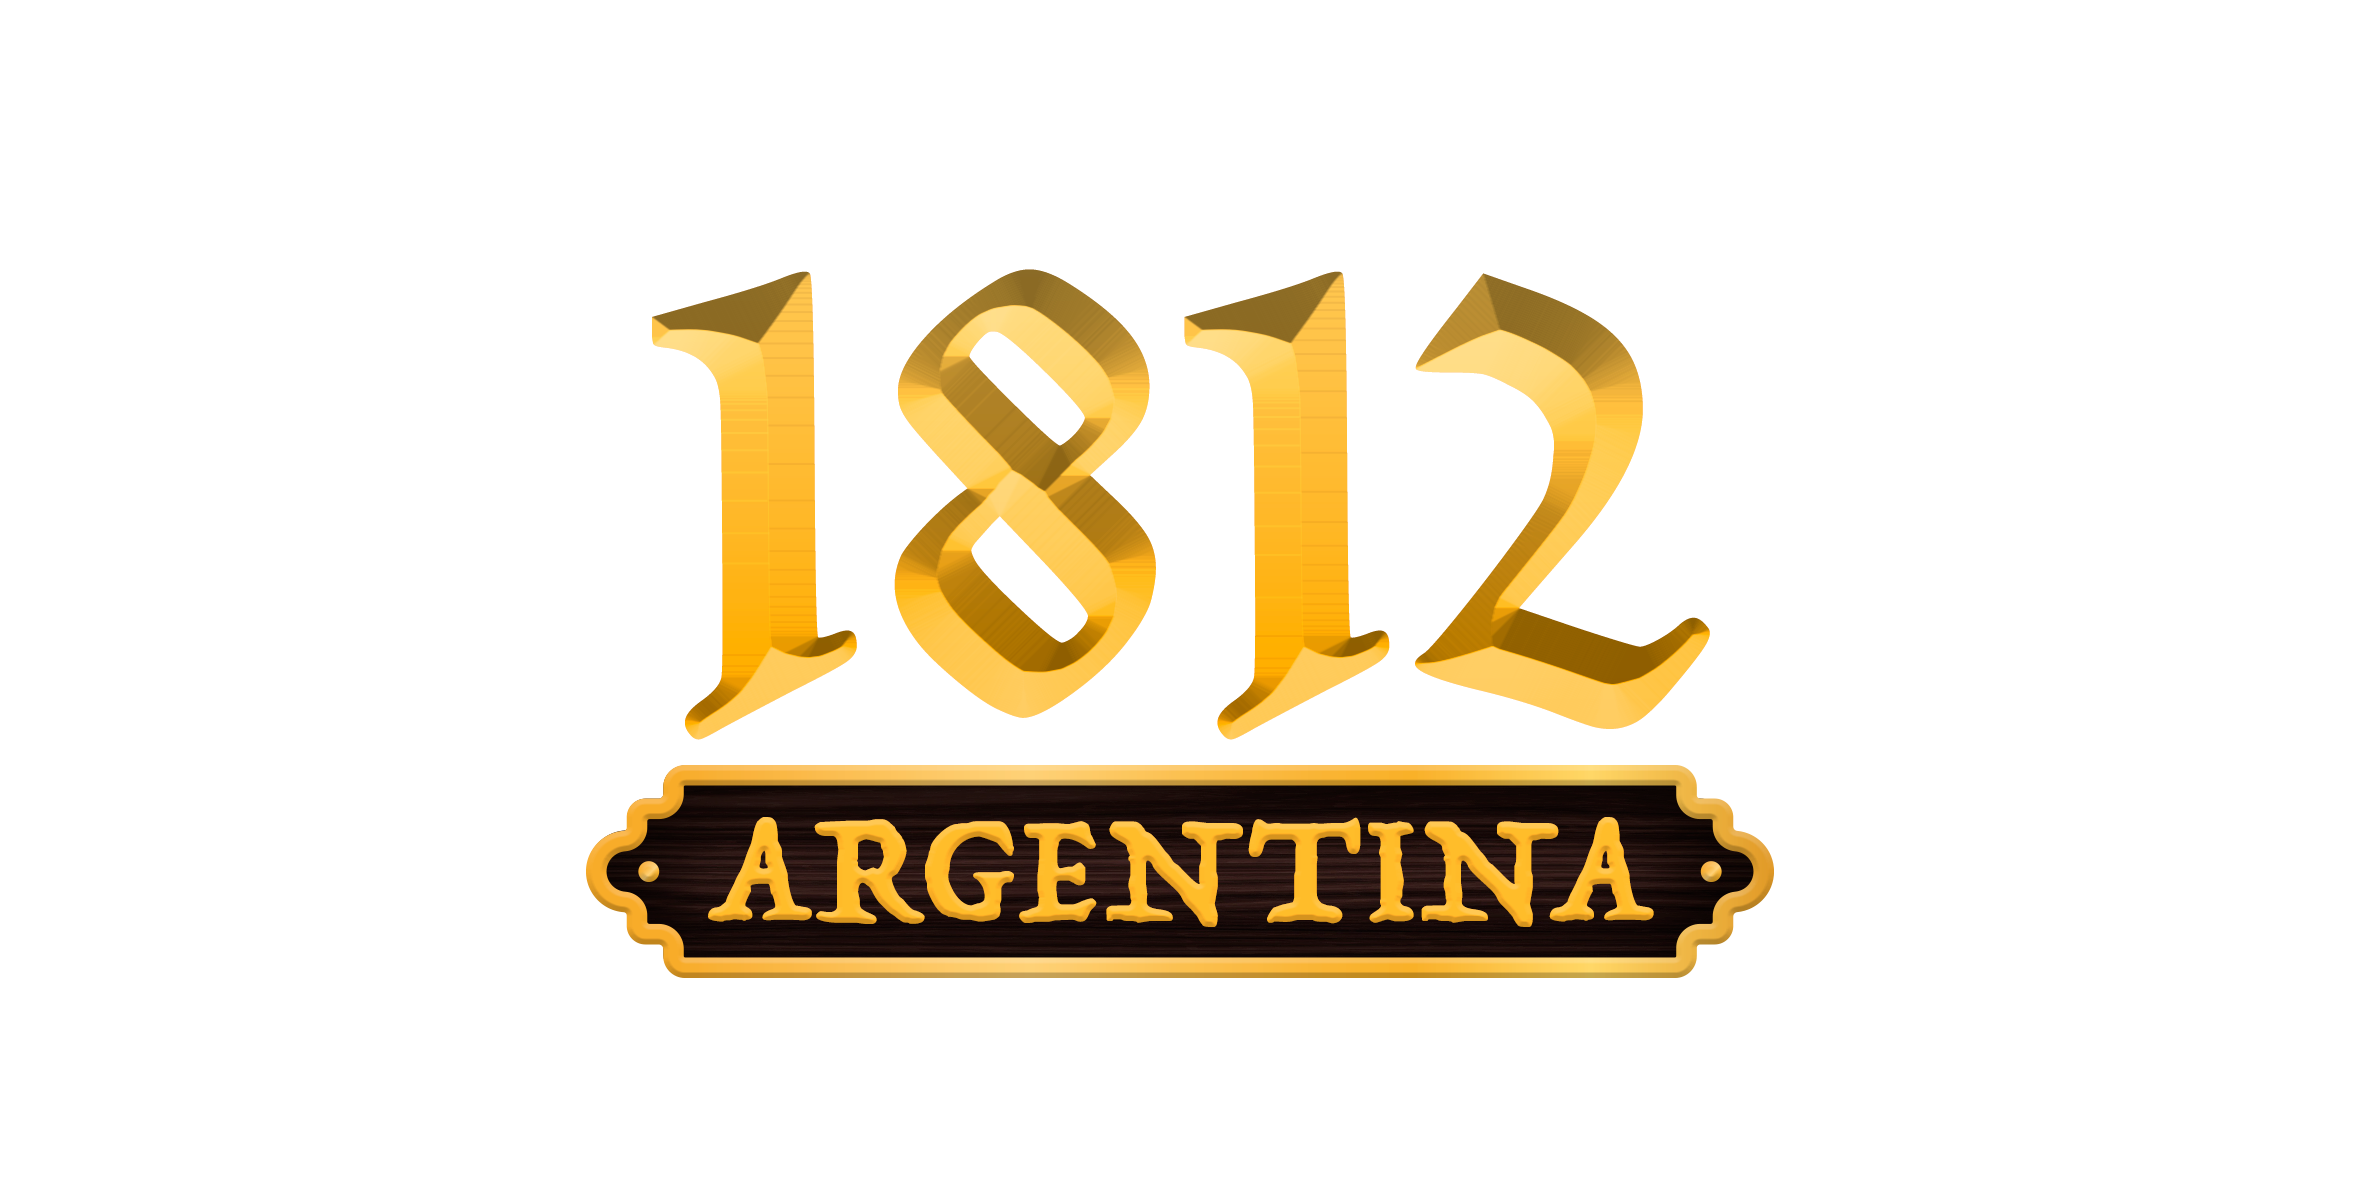 1812 Argentina